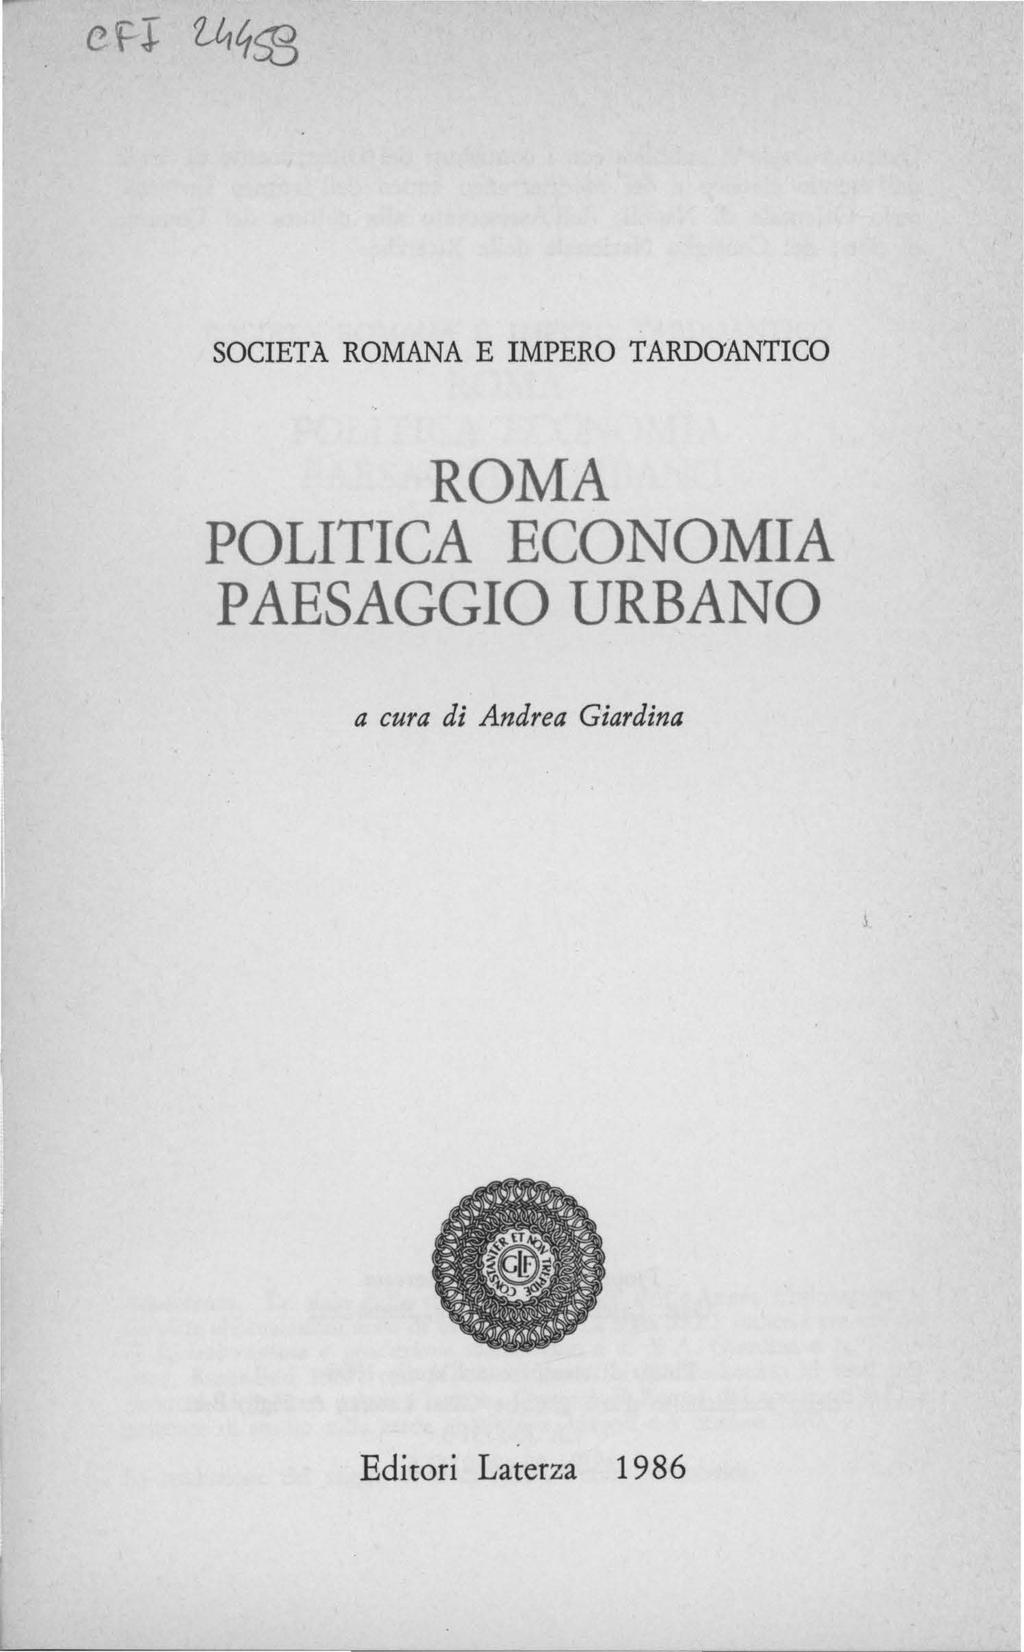 SOCIETA ROMANA E IMPERO TARDOANTICO ROMA POLITICA ECONOMIA